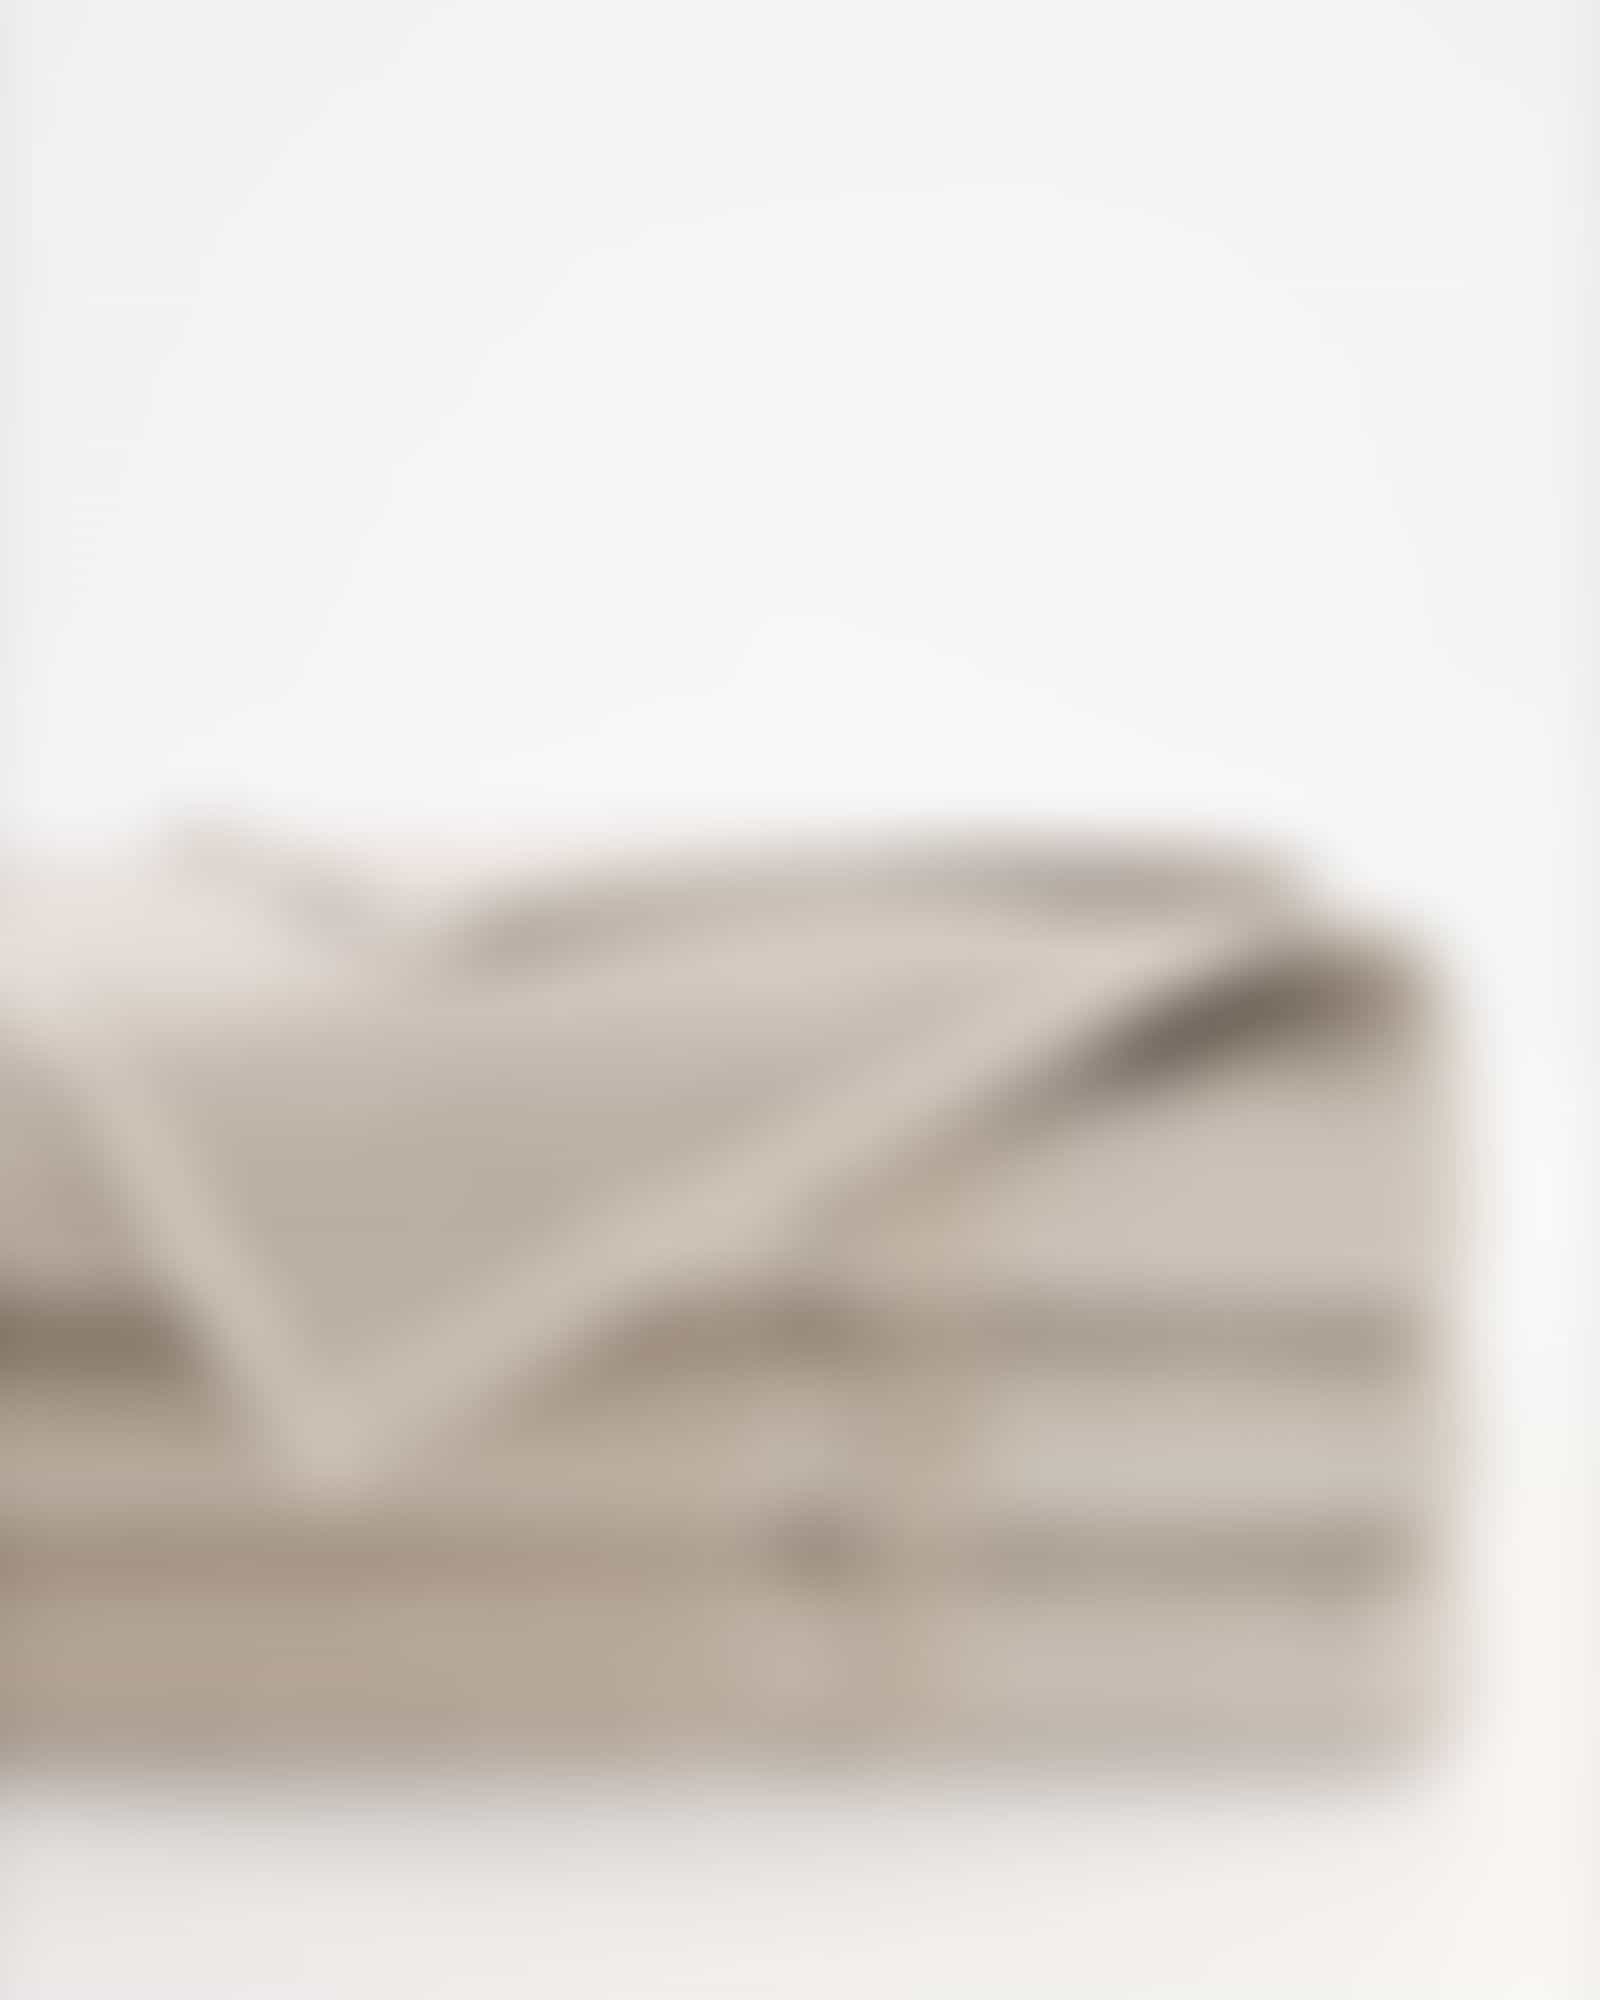 Möve Handtücher Wellbeing Perlstruktur - Farbe: cashmere - 713 - Saunatuch 80x200 cm Detailbild 2